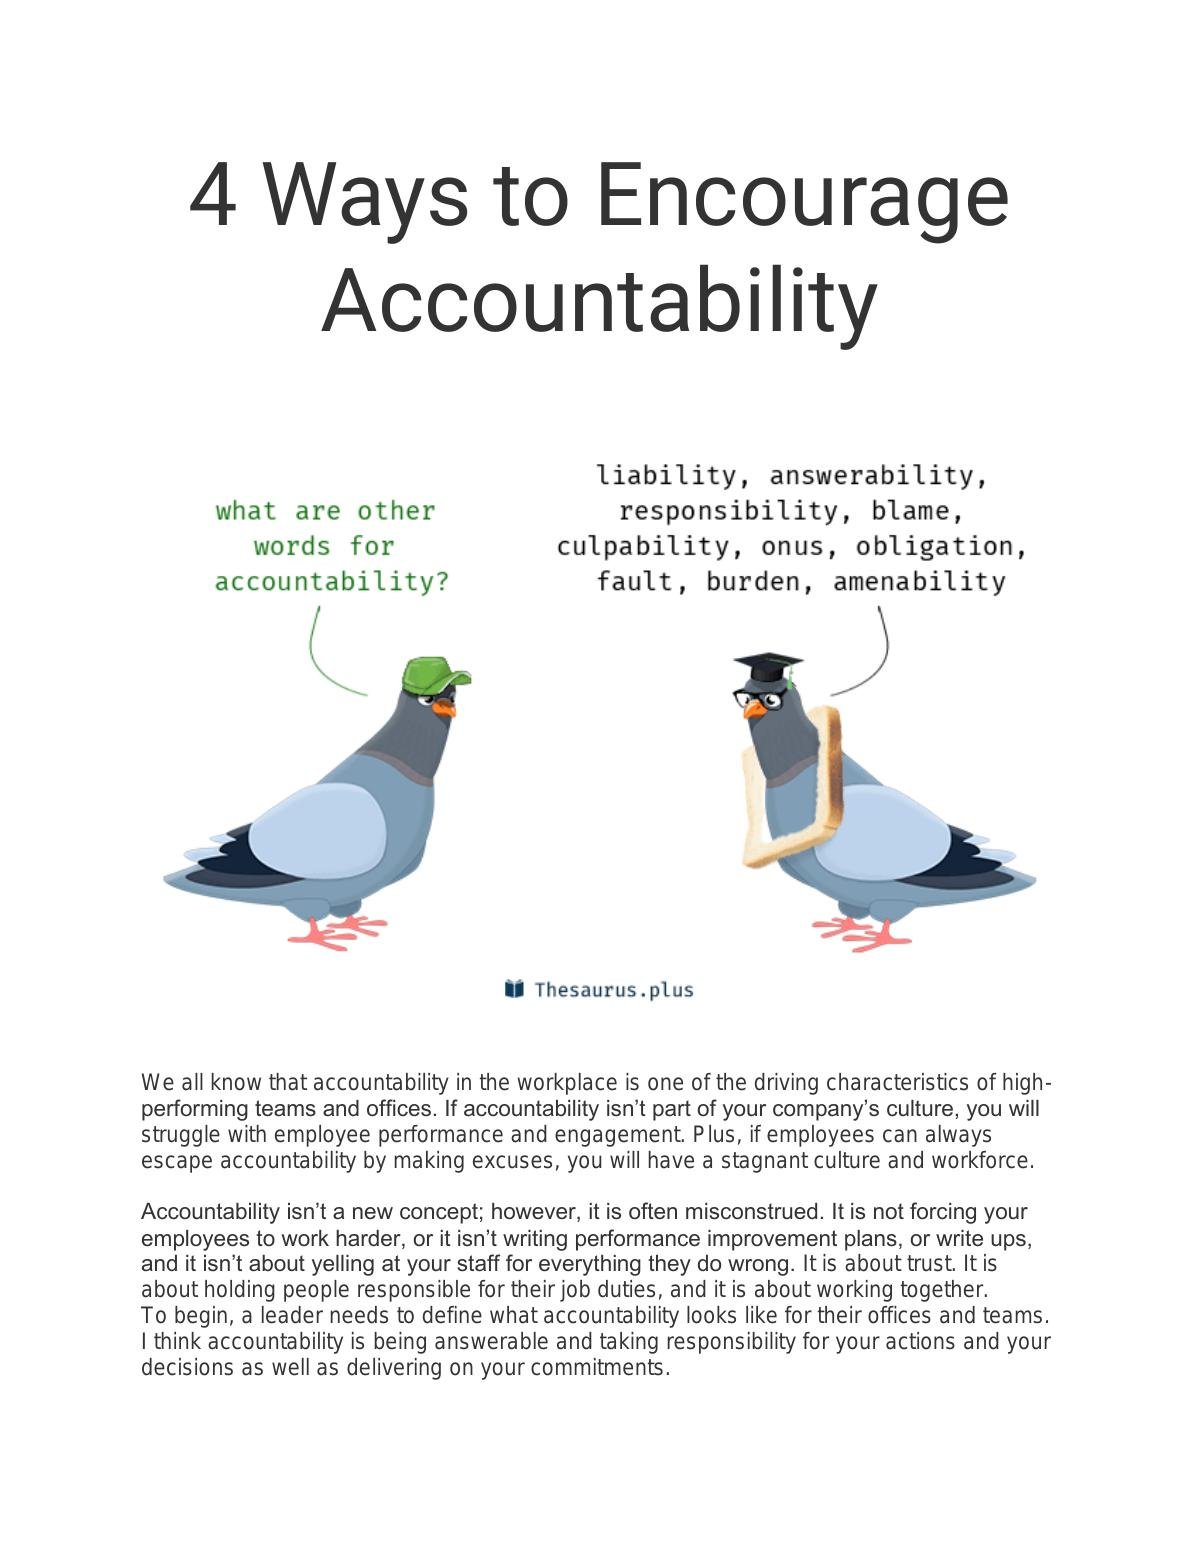 4 Ways to Encourage Accountability